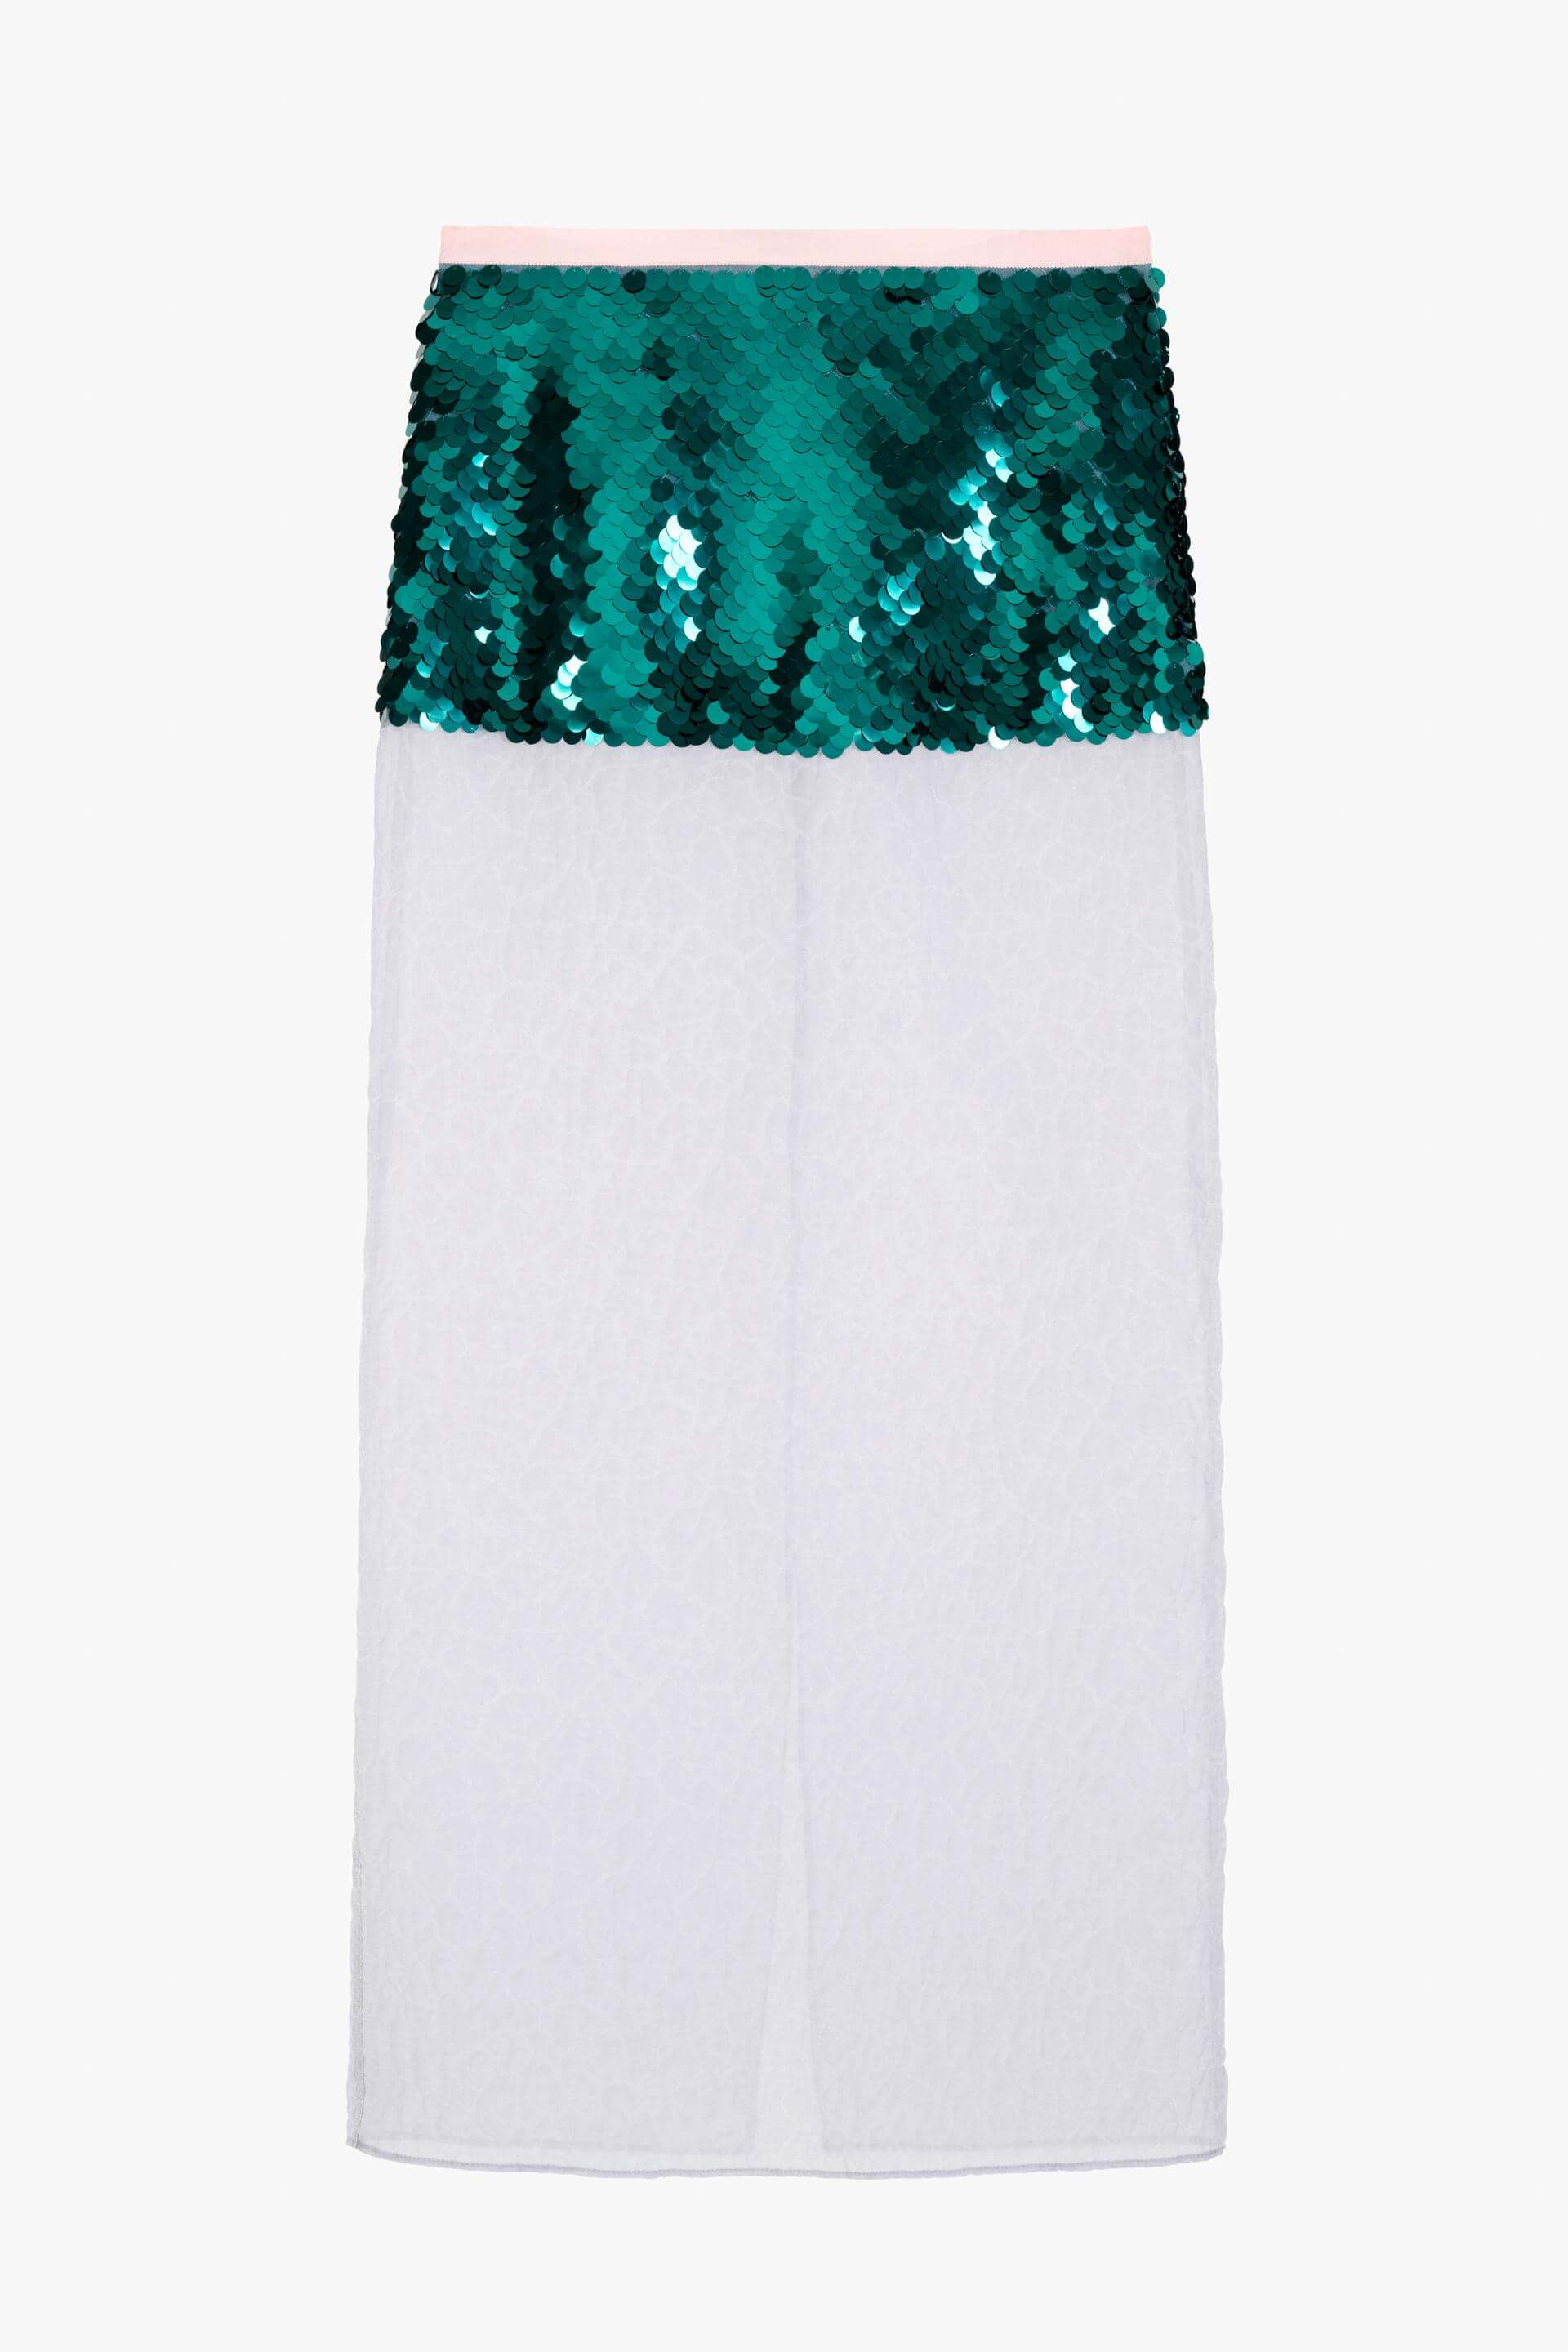 Юбка Zara Contrast Sequinned - Limited Edition, белый юбка женская плиссированная длинная с завышенной талией